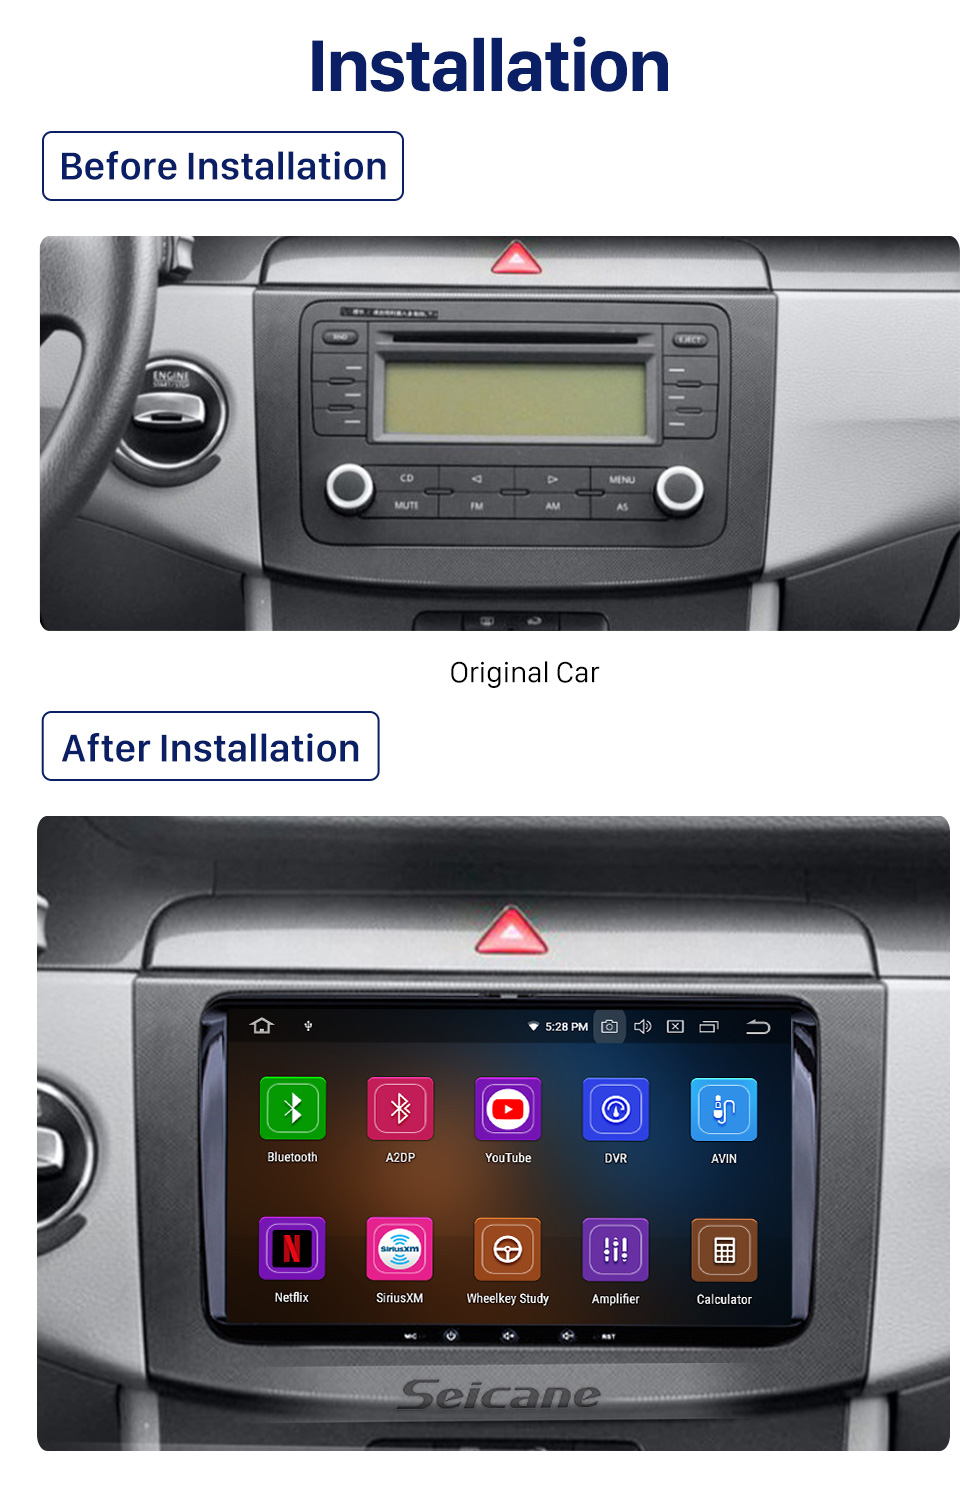 Seicane OEM Android 10.0 GPS Rádio Sistema de Áudio para 2010-2013 VW Volkswagen Sharan Suporte DVD Player 3G WiFi Espelho Link OBD2 DVR Bluetooth Retrovisor Câmera Tela de toque